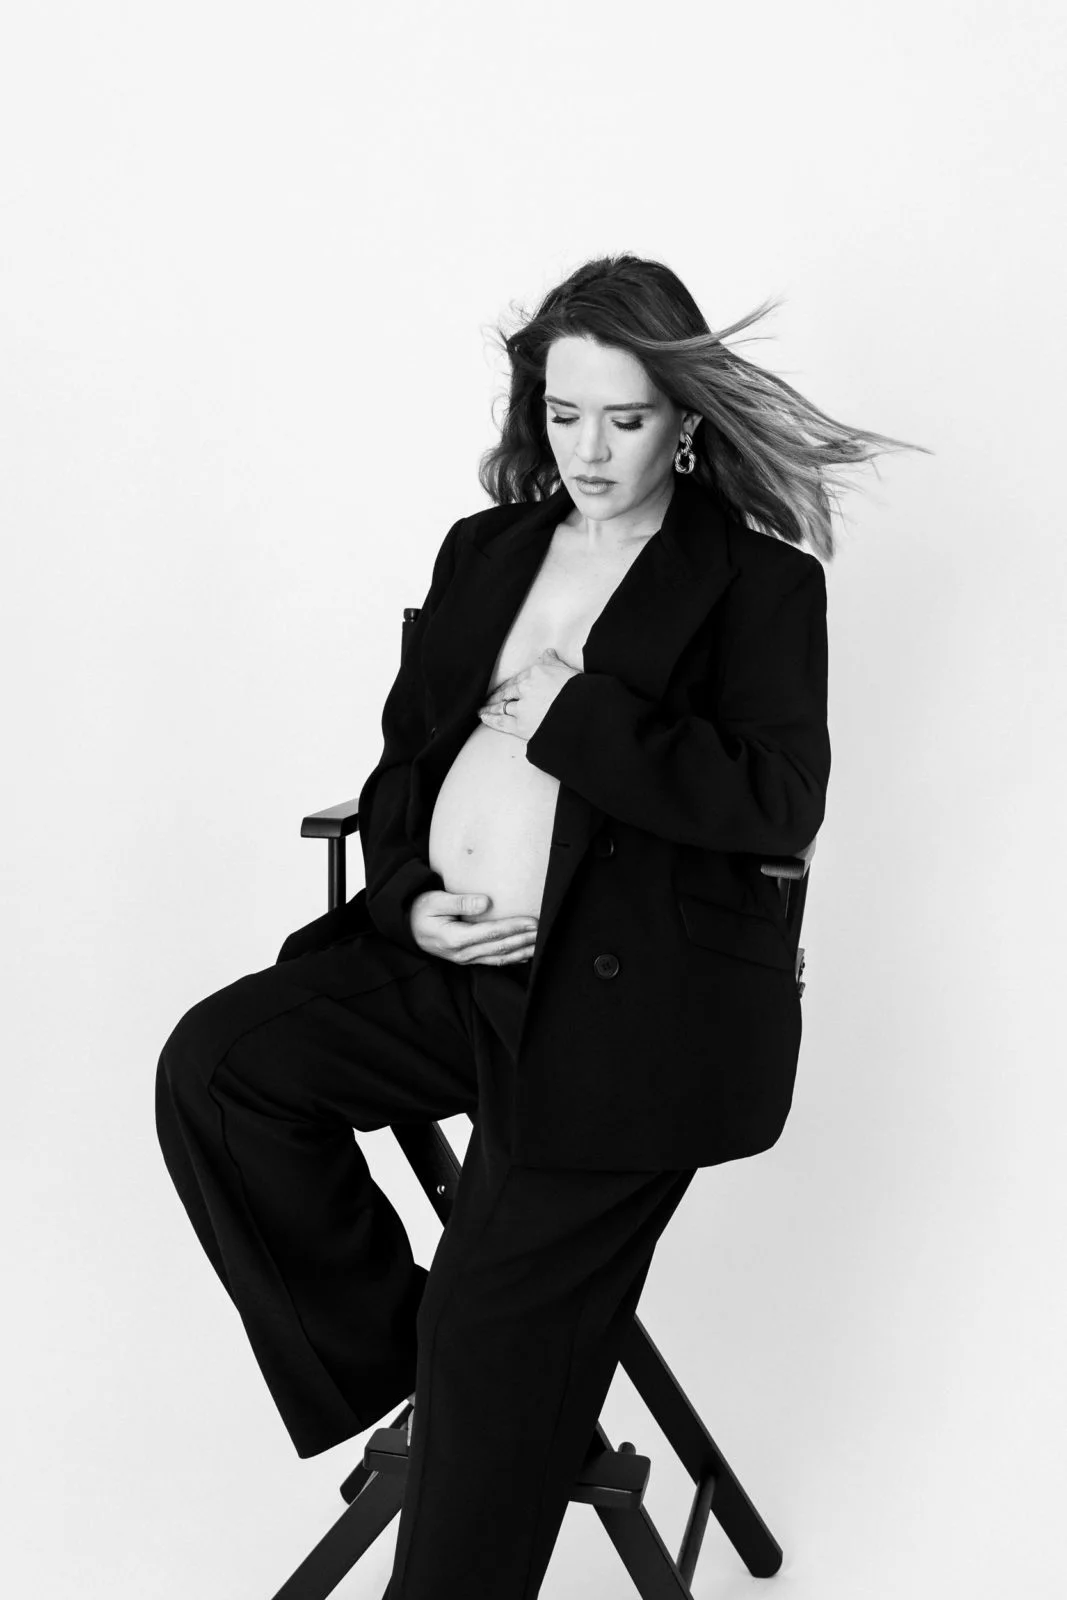 Ujeti v objektivu: čudovita črno-bela fotografija nosečniškega para v našem fotografskem studiu v Ljubljani